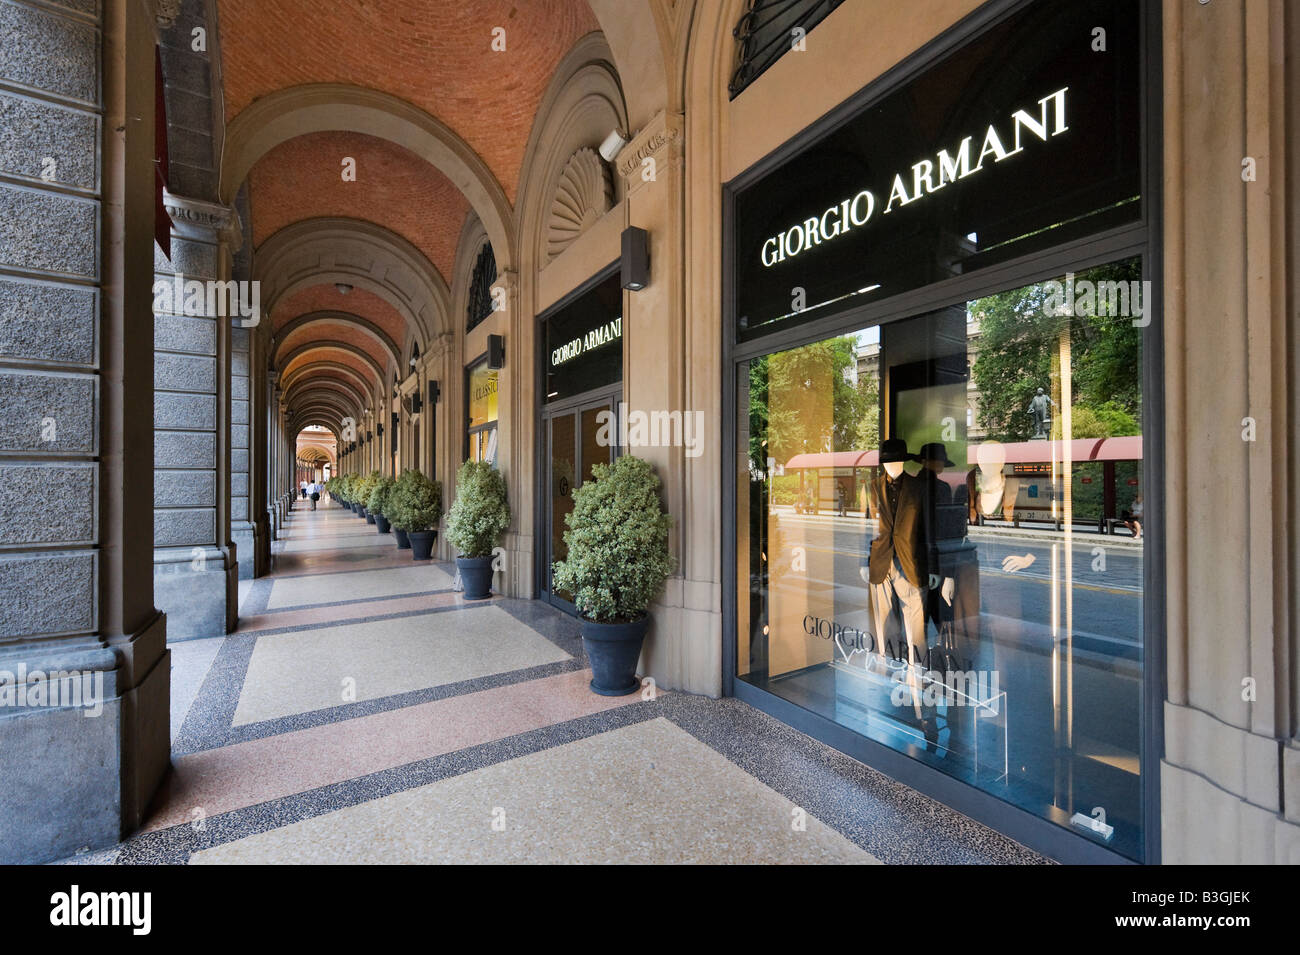 Giorgio Armani store in un portico di via Farini nel centro storico di Bologna, Emilia Romagna, Italia Foto Stock